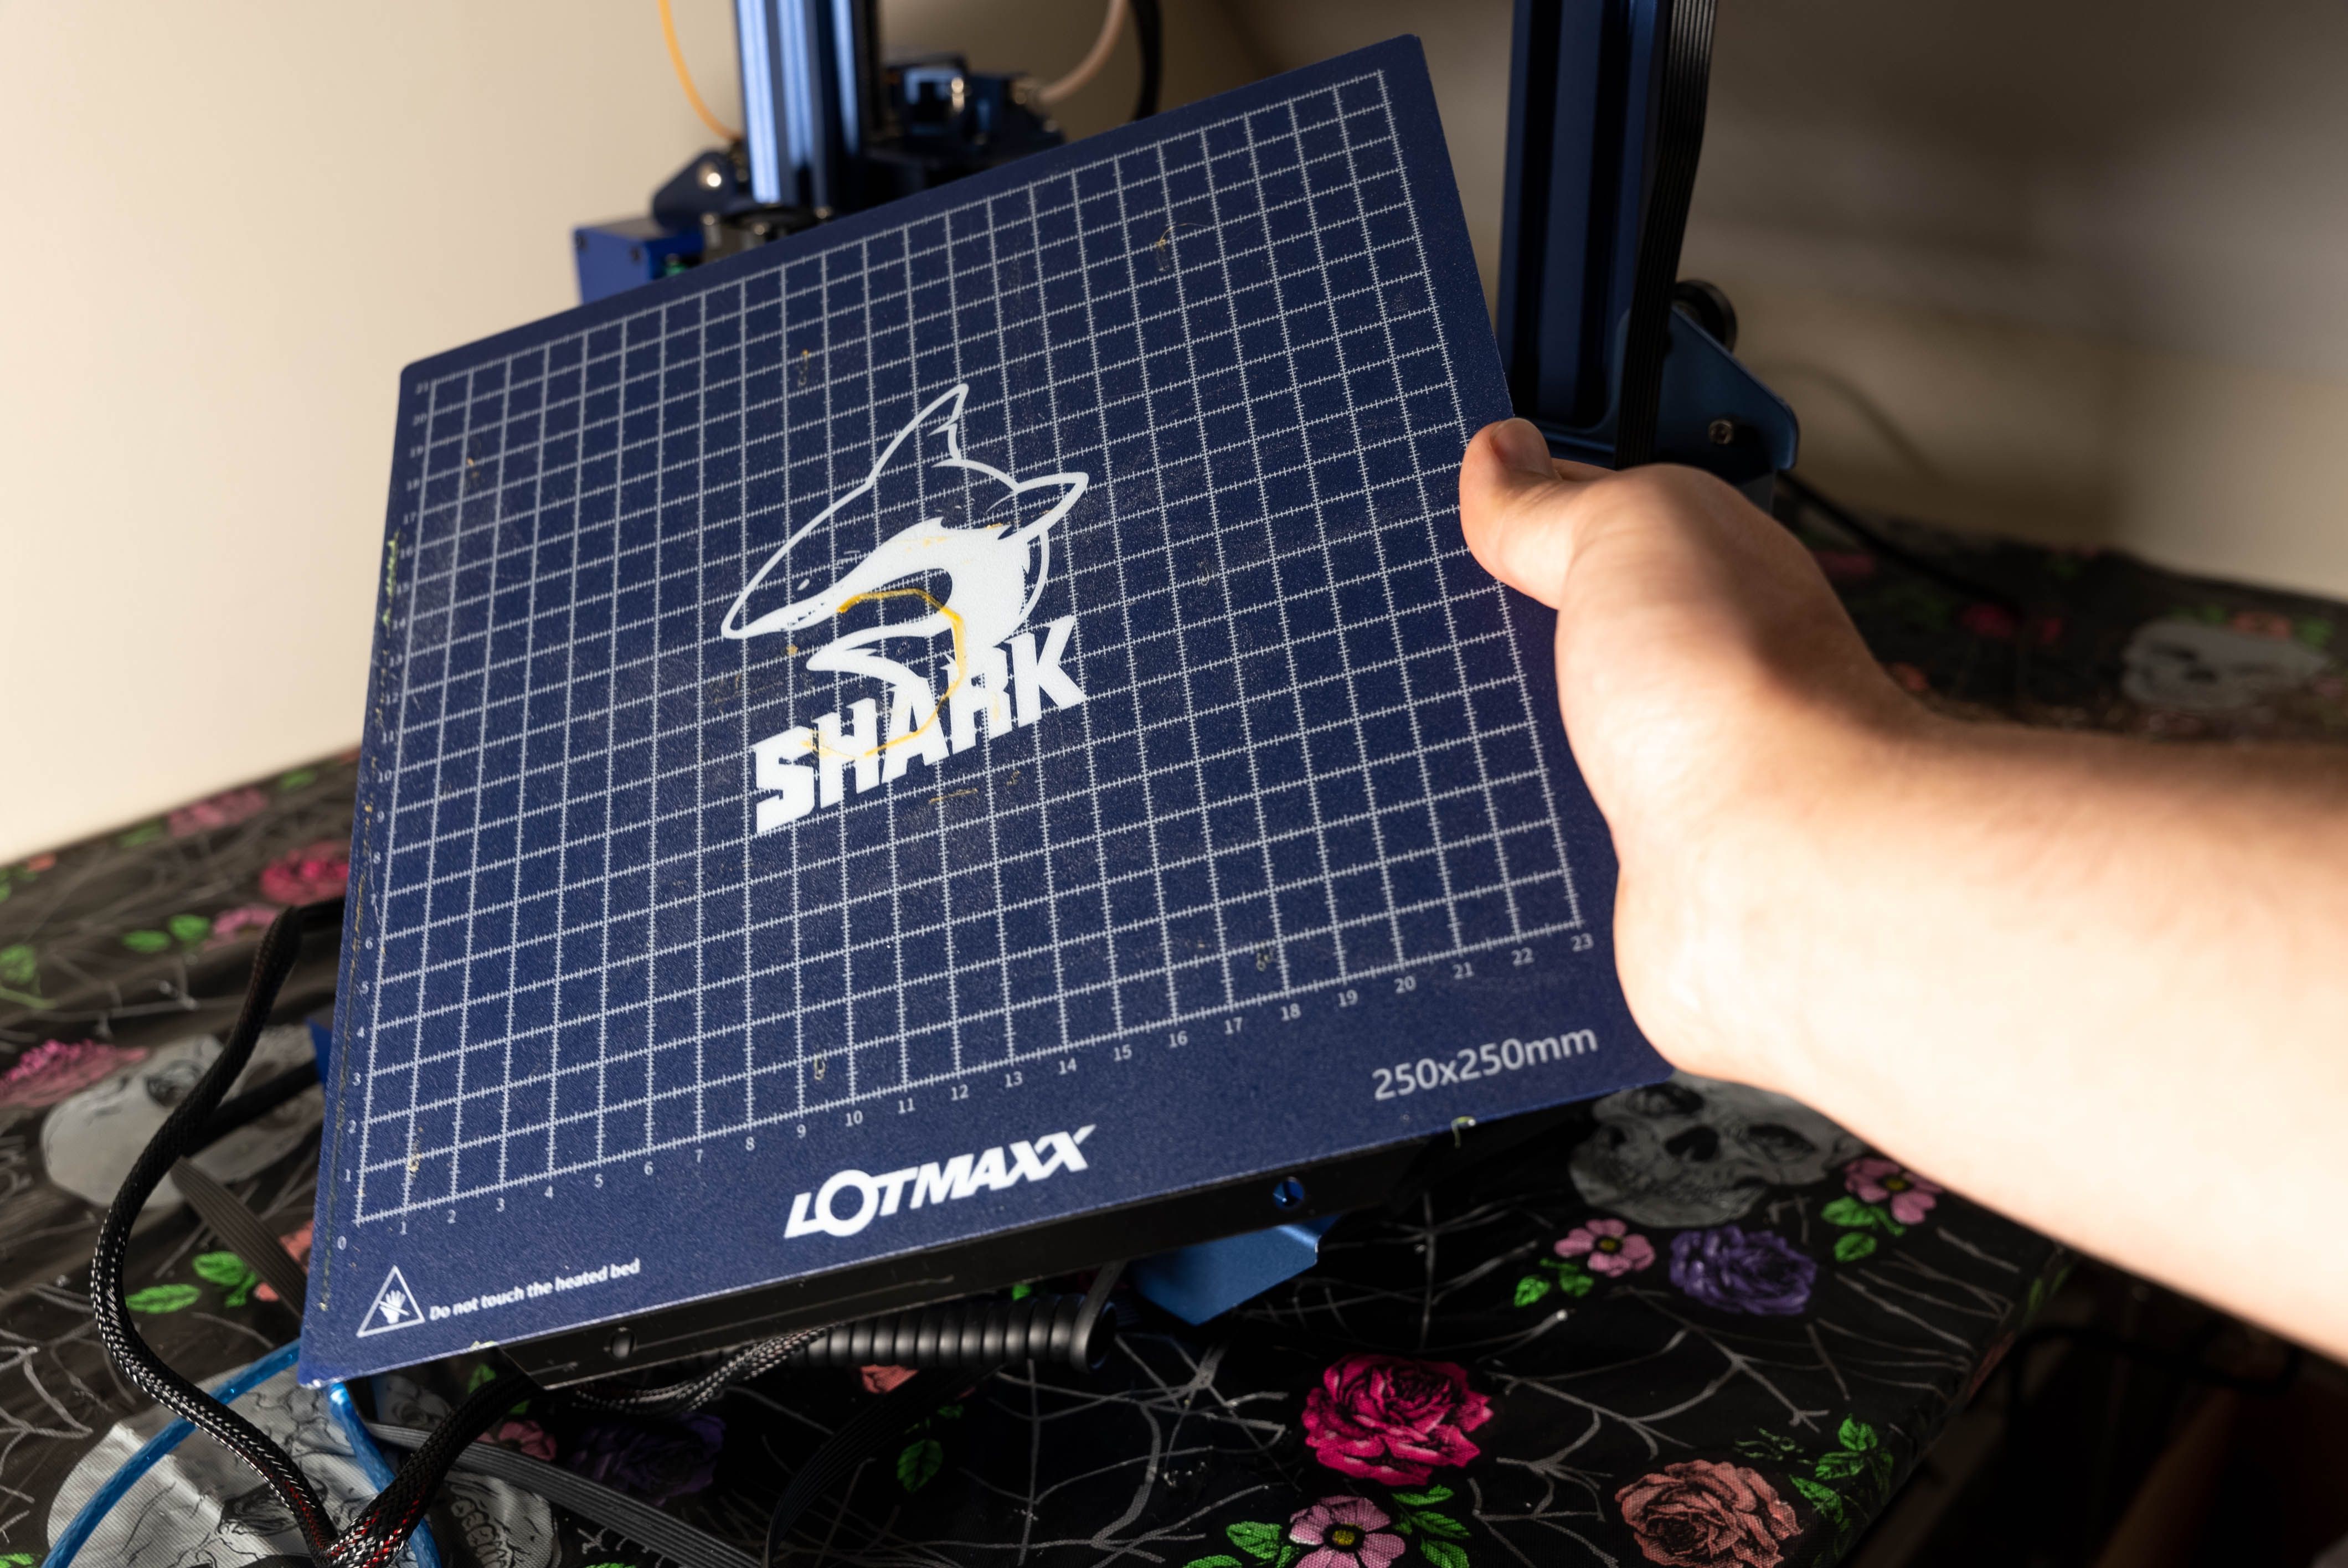 DSC02686 - Recensione Lotmaxx SC-10 Shark V2: stampante 3D 2-in-1 impressionante e conveniente